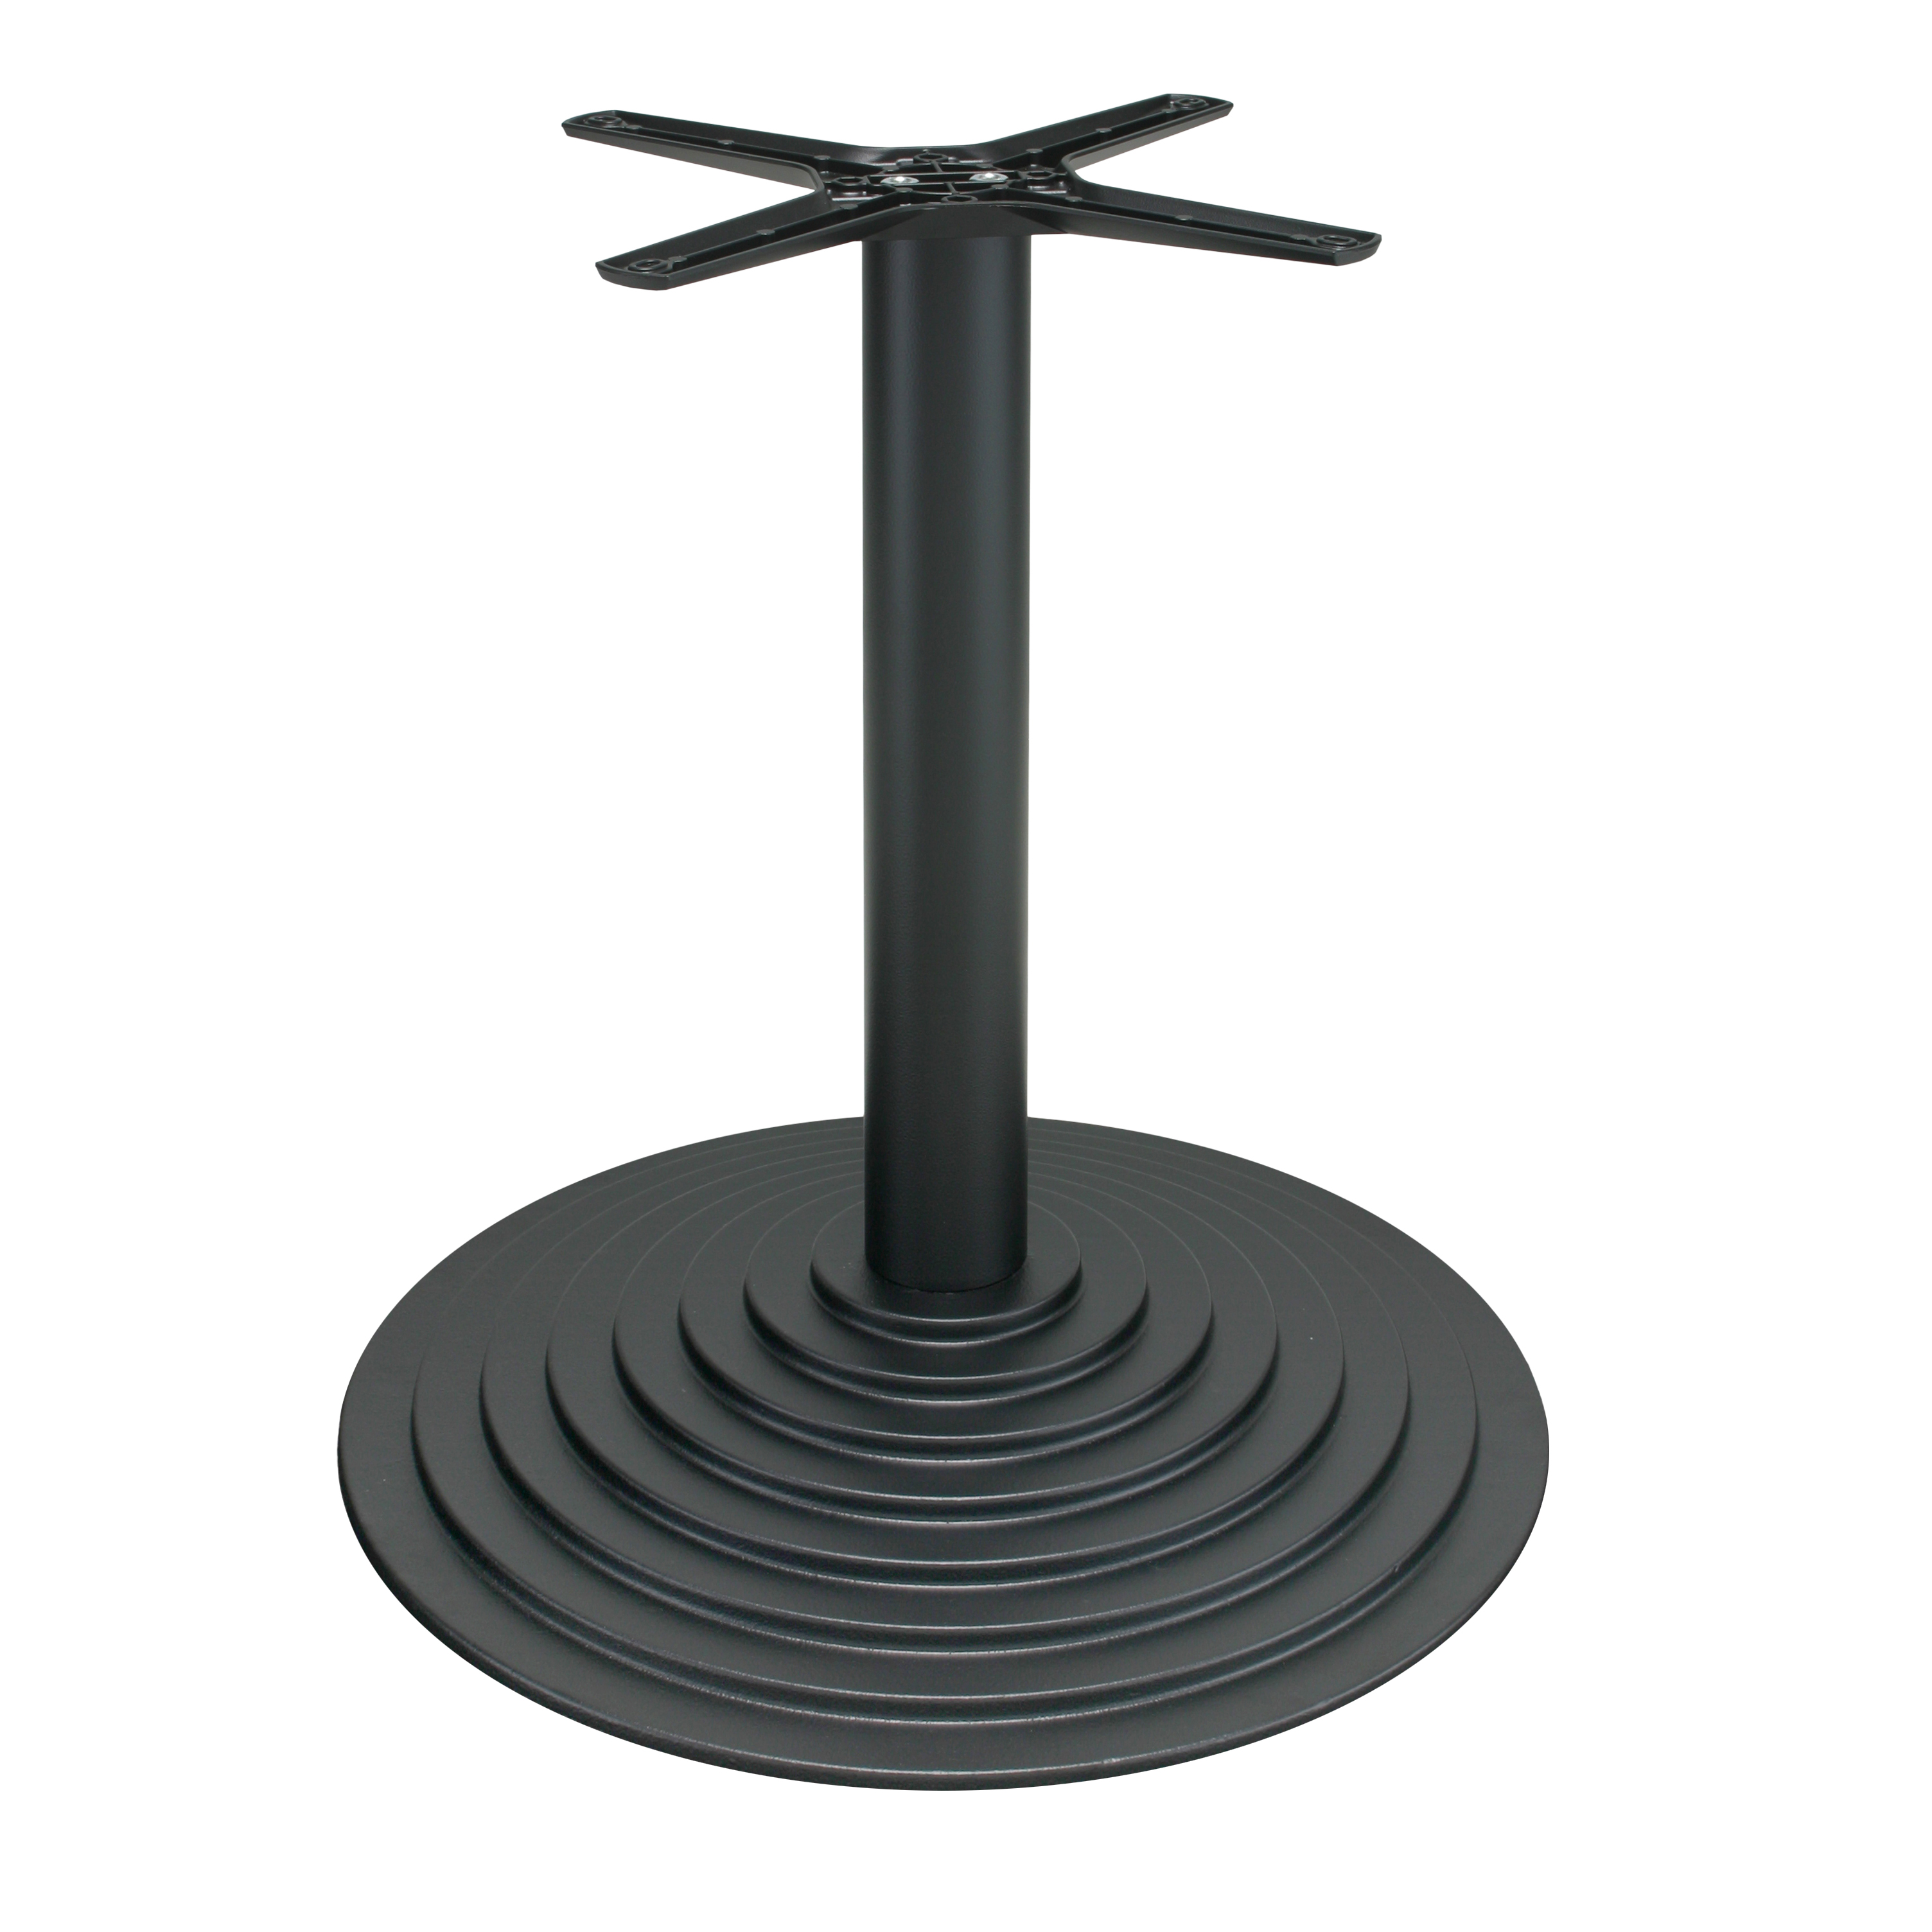 Tischgestell P600 - Gusseisen - pulverbeschichtet - schwarz - runde Bodenplatte